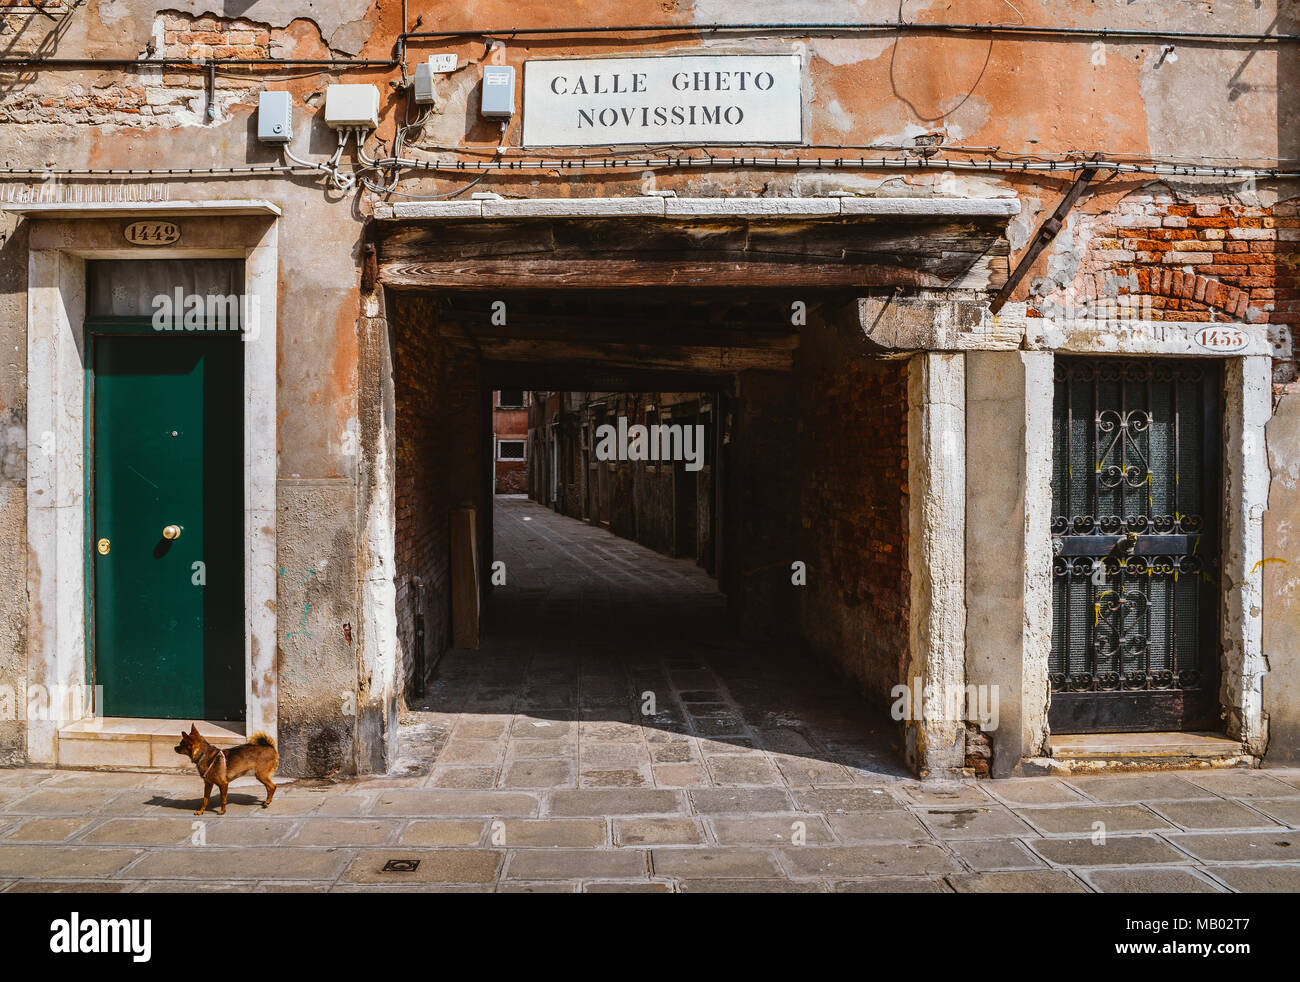 Eingang zu einem alten Gasse in der traditionellen jüdischen Ghetto von Venedig im Stadtteil Cannaregio. Calle Gheto Novissimo in Englisch bedeutet neue Ghetto Street Stockfoto